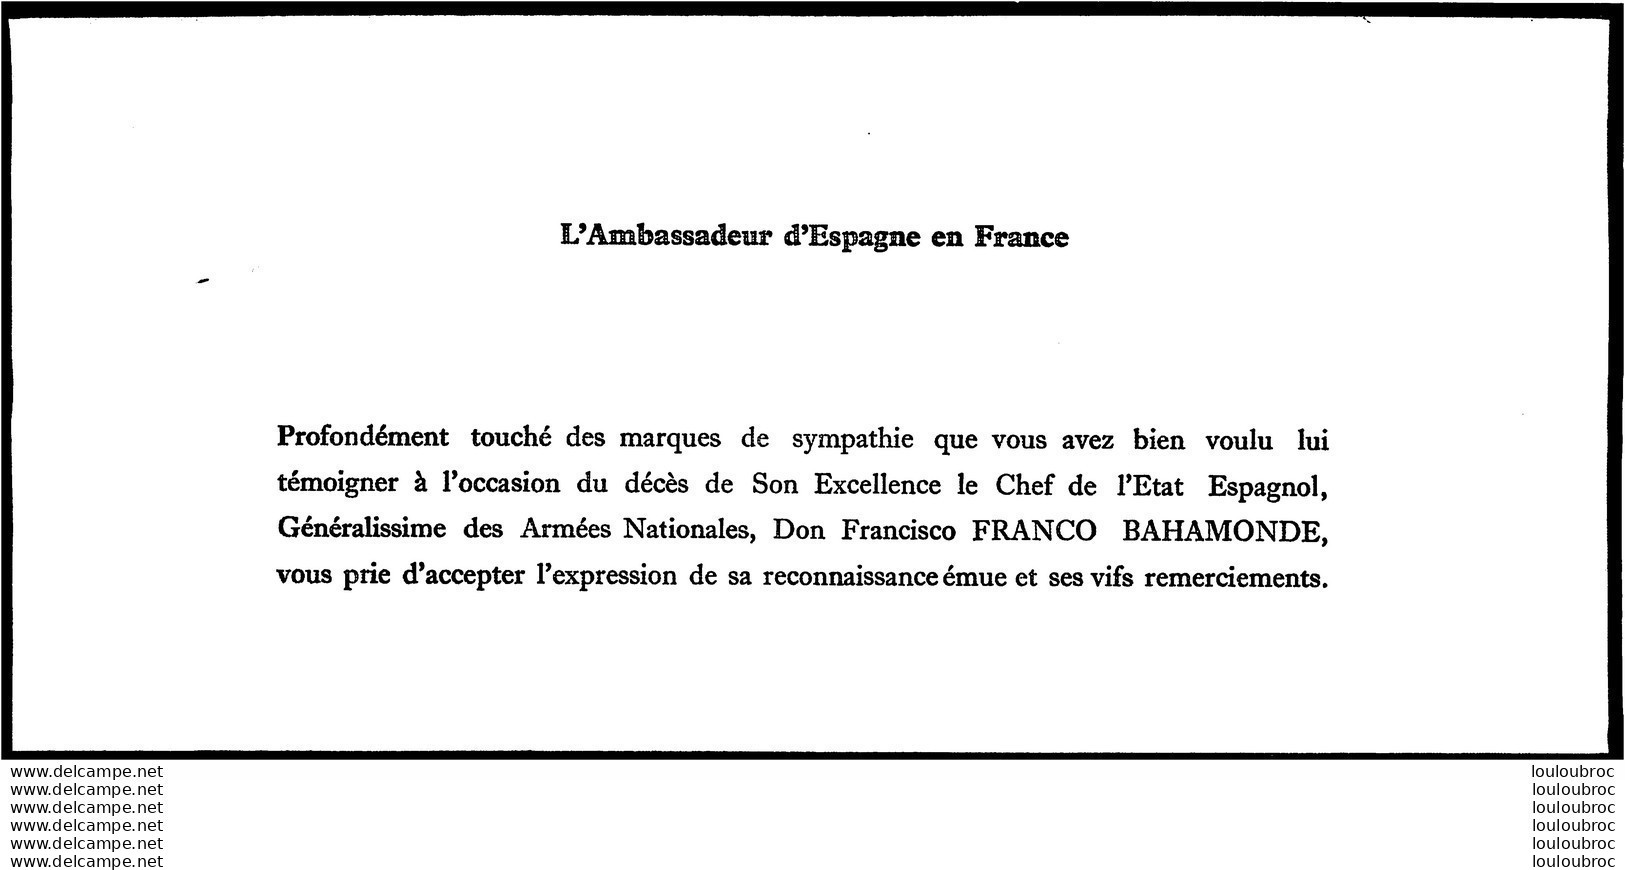 AMBASSADE D'ESPAGNE DECES DE FRANCO BAHAMONDE CARTE DE REMERCIEMENTS AUX CONDOLEANCES - Historical Documents